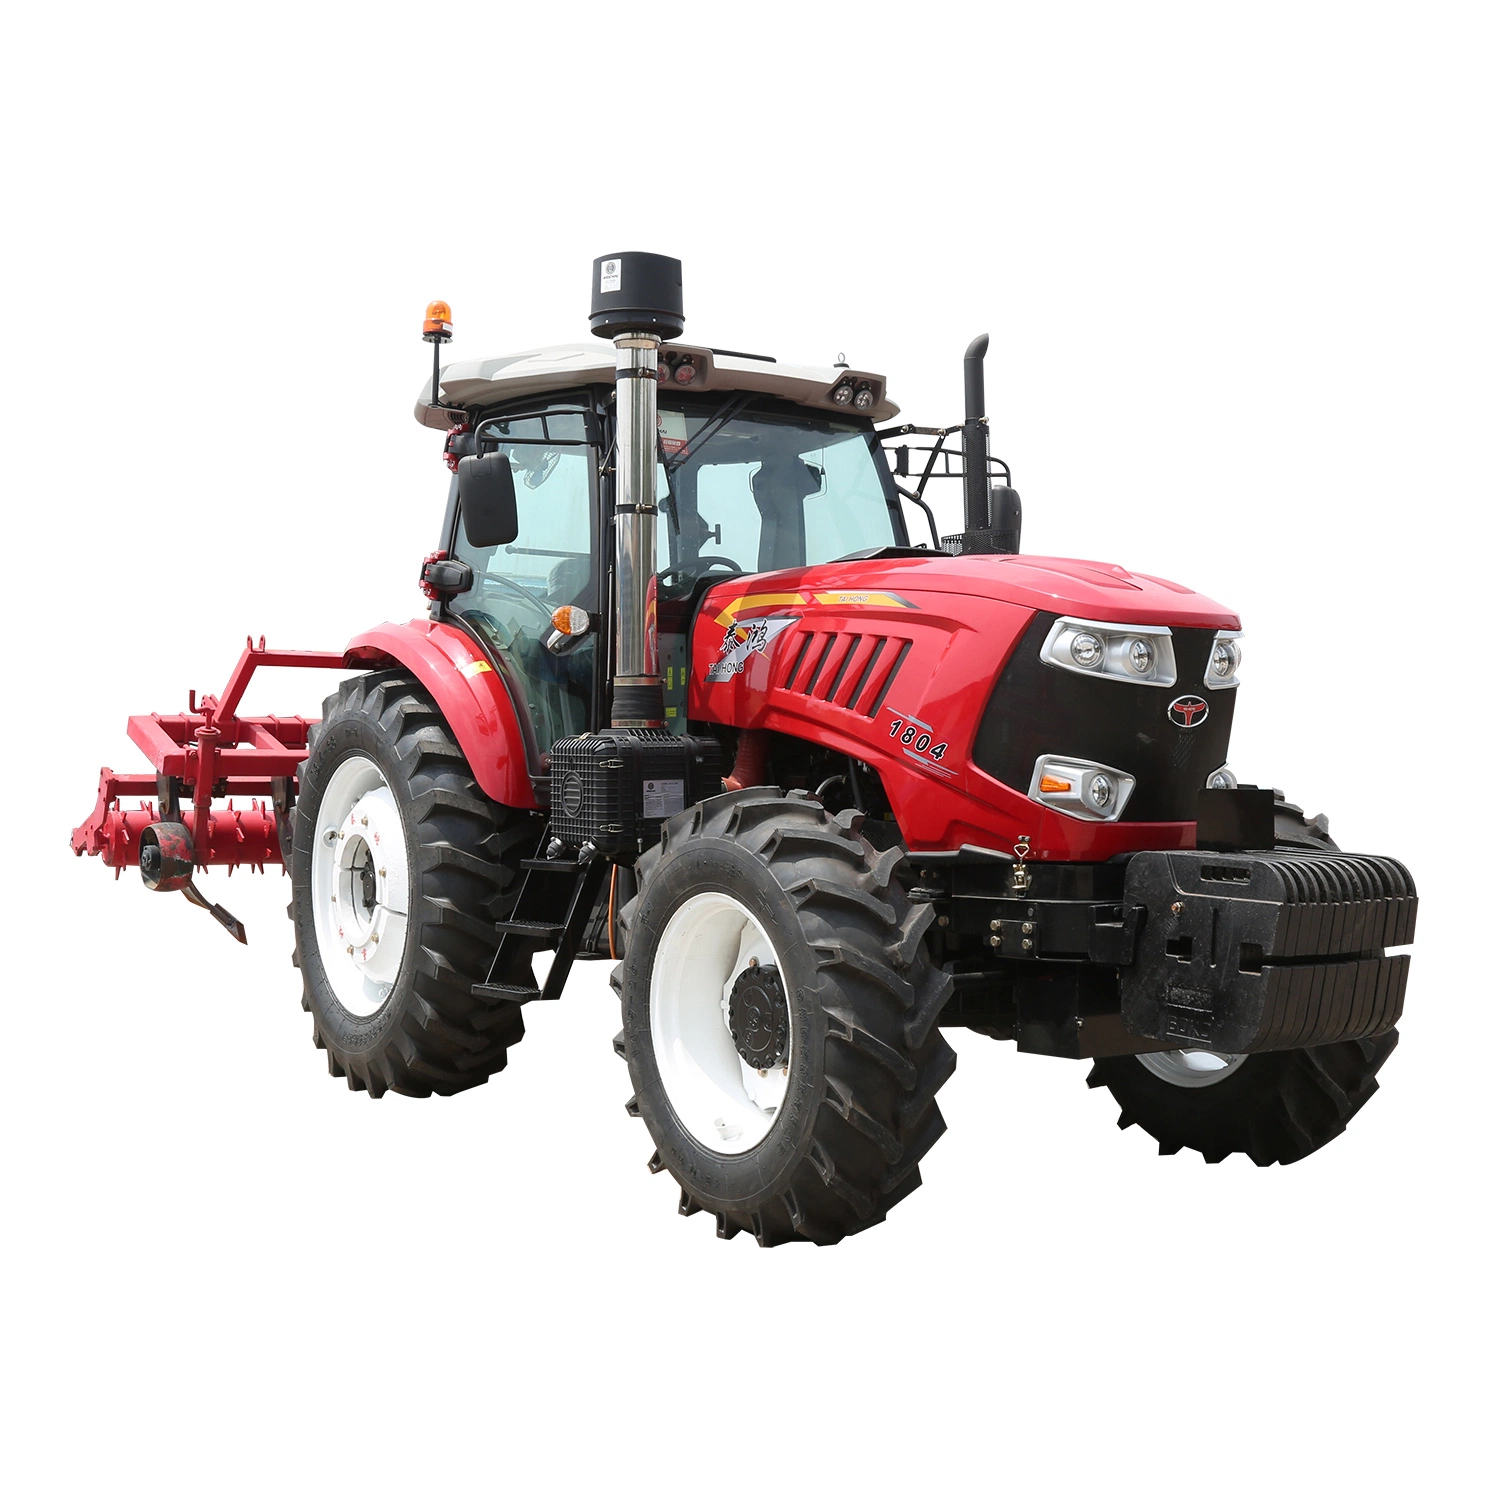 Maquinaria agrícola Tractor agrícola impulsado a las 4 ruedas 185 /220 CV de potencia del tractor para remolque, lanza